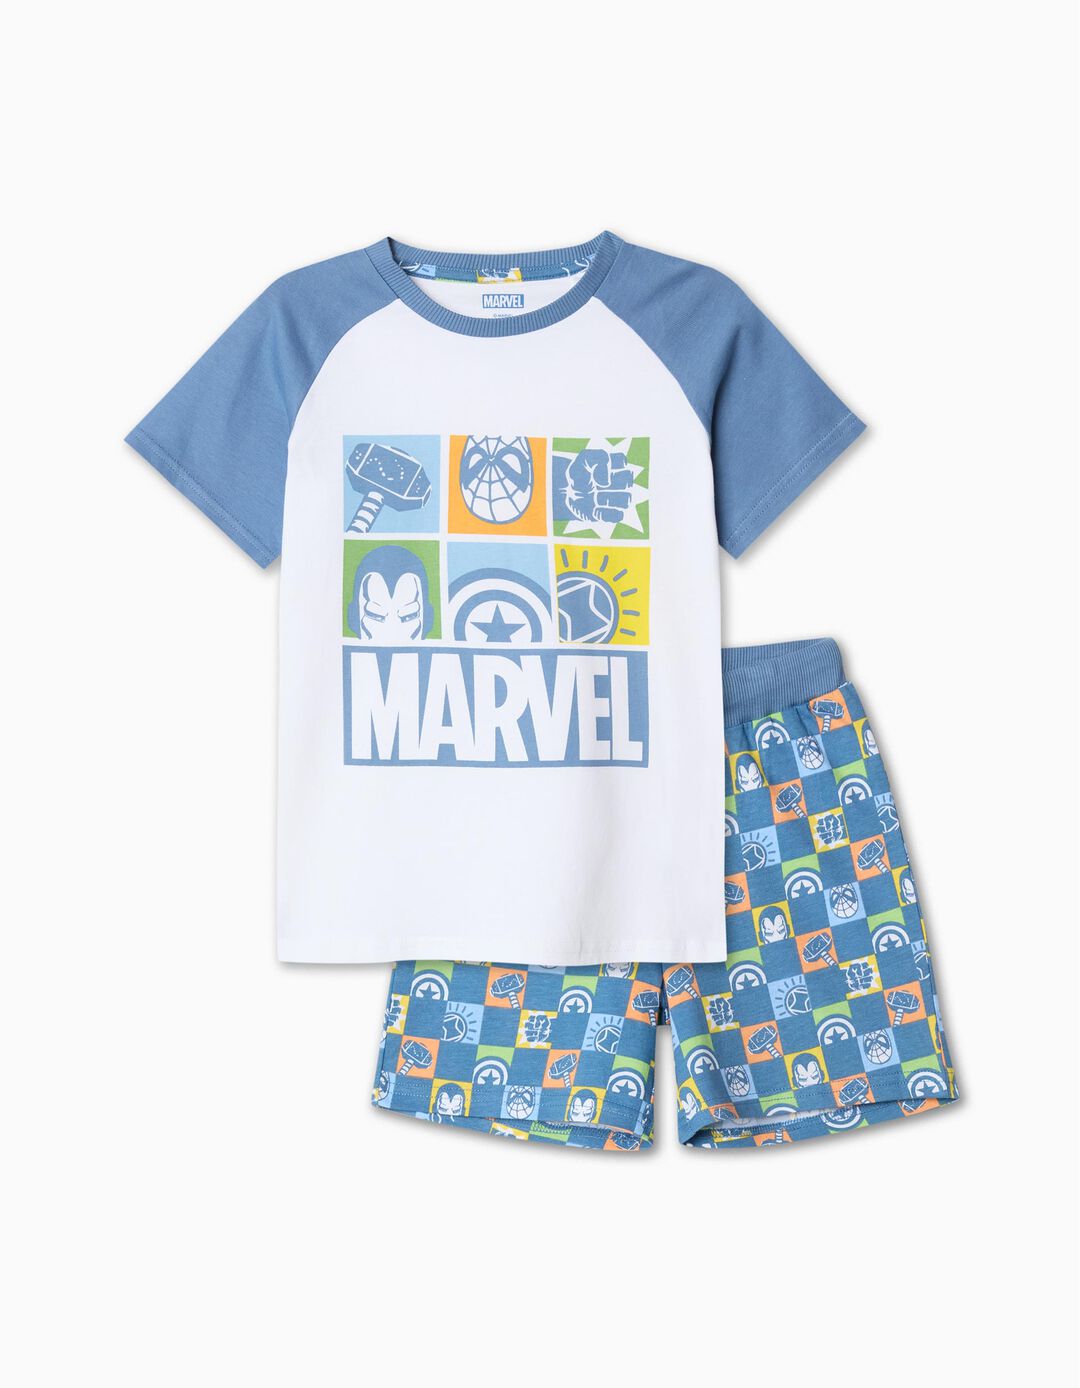 Pijama 'Marvel', Menino, Multicor